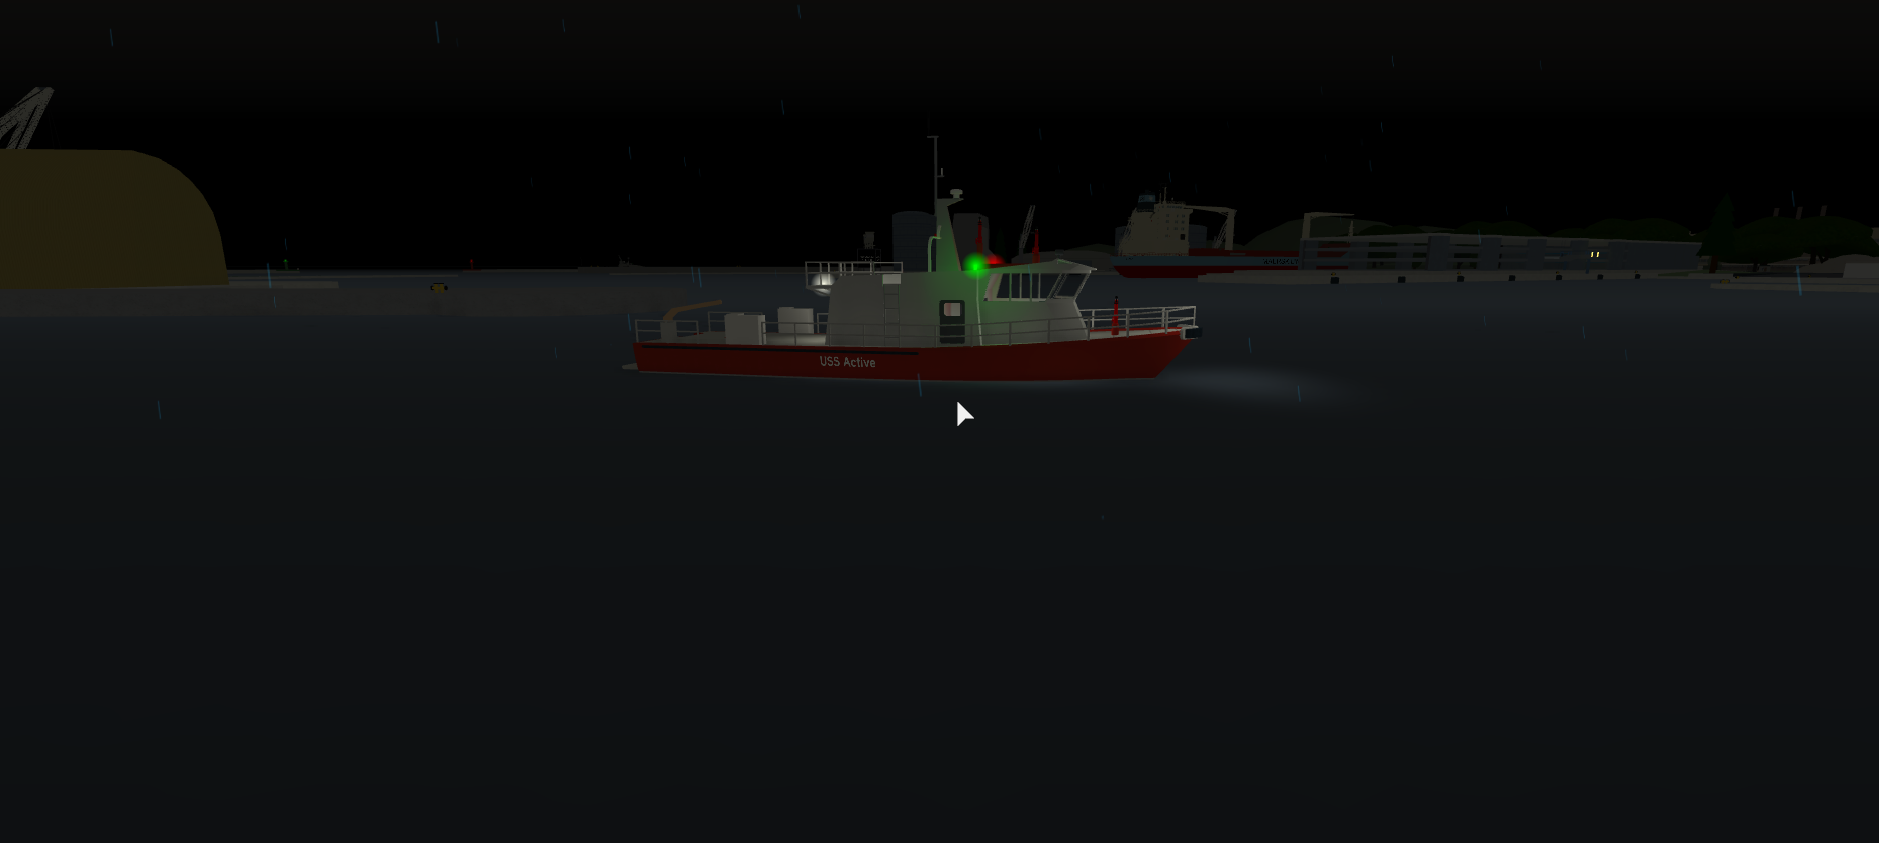 Fireboat Dynamic Ship Simulator Iii Wiki Fandom - roblox dynamic ship simulator 3